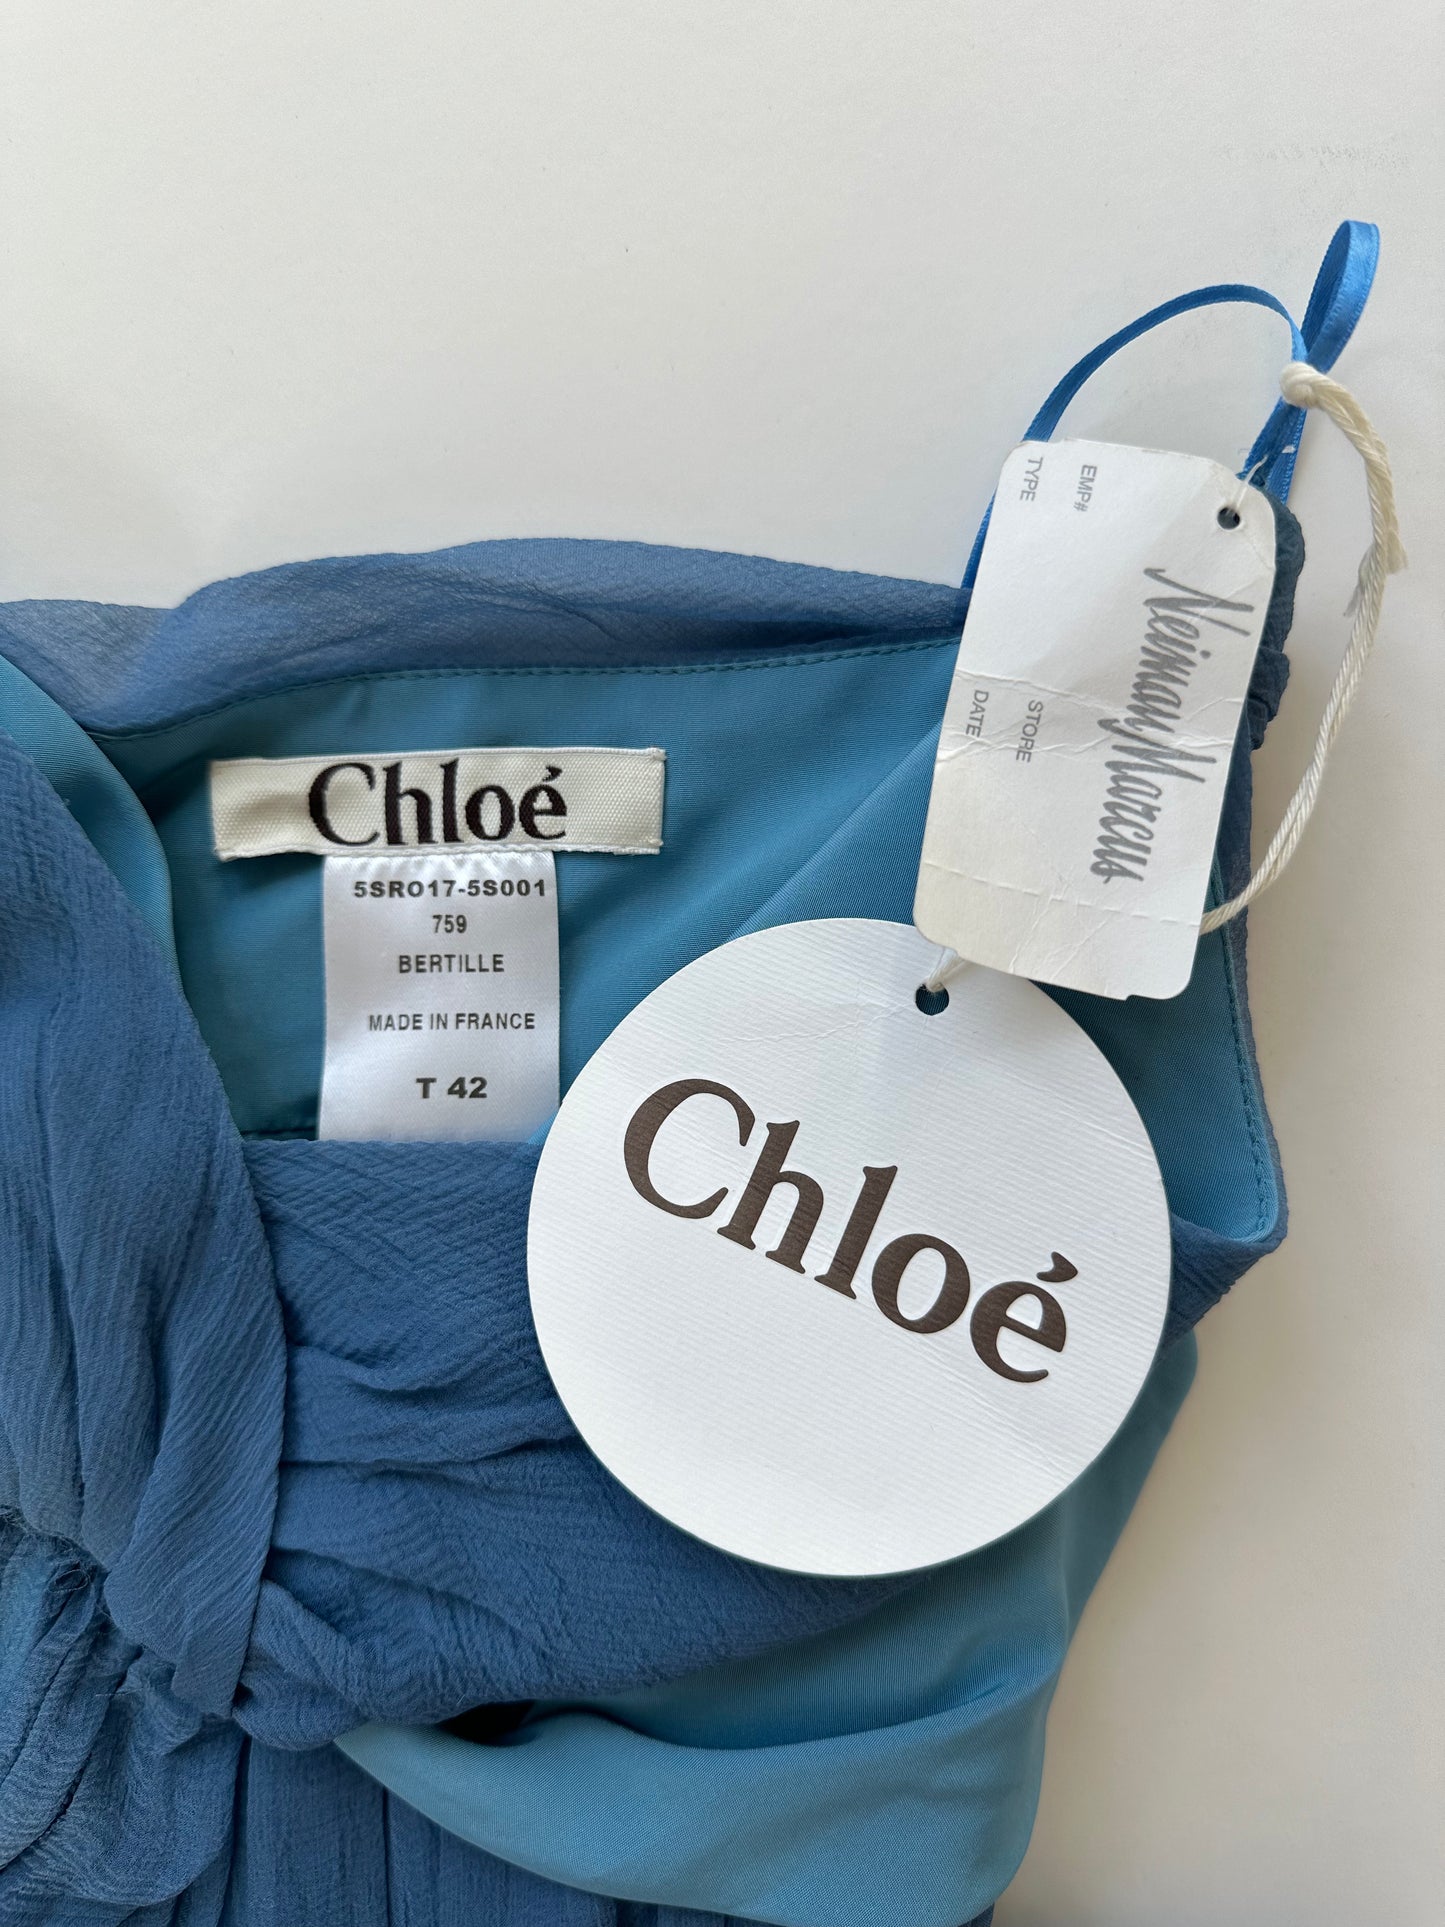 Chloé by Phoebe Philo 2005 Chiffon Bustier Dress Size 42